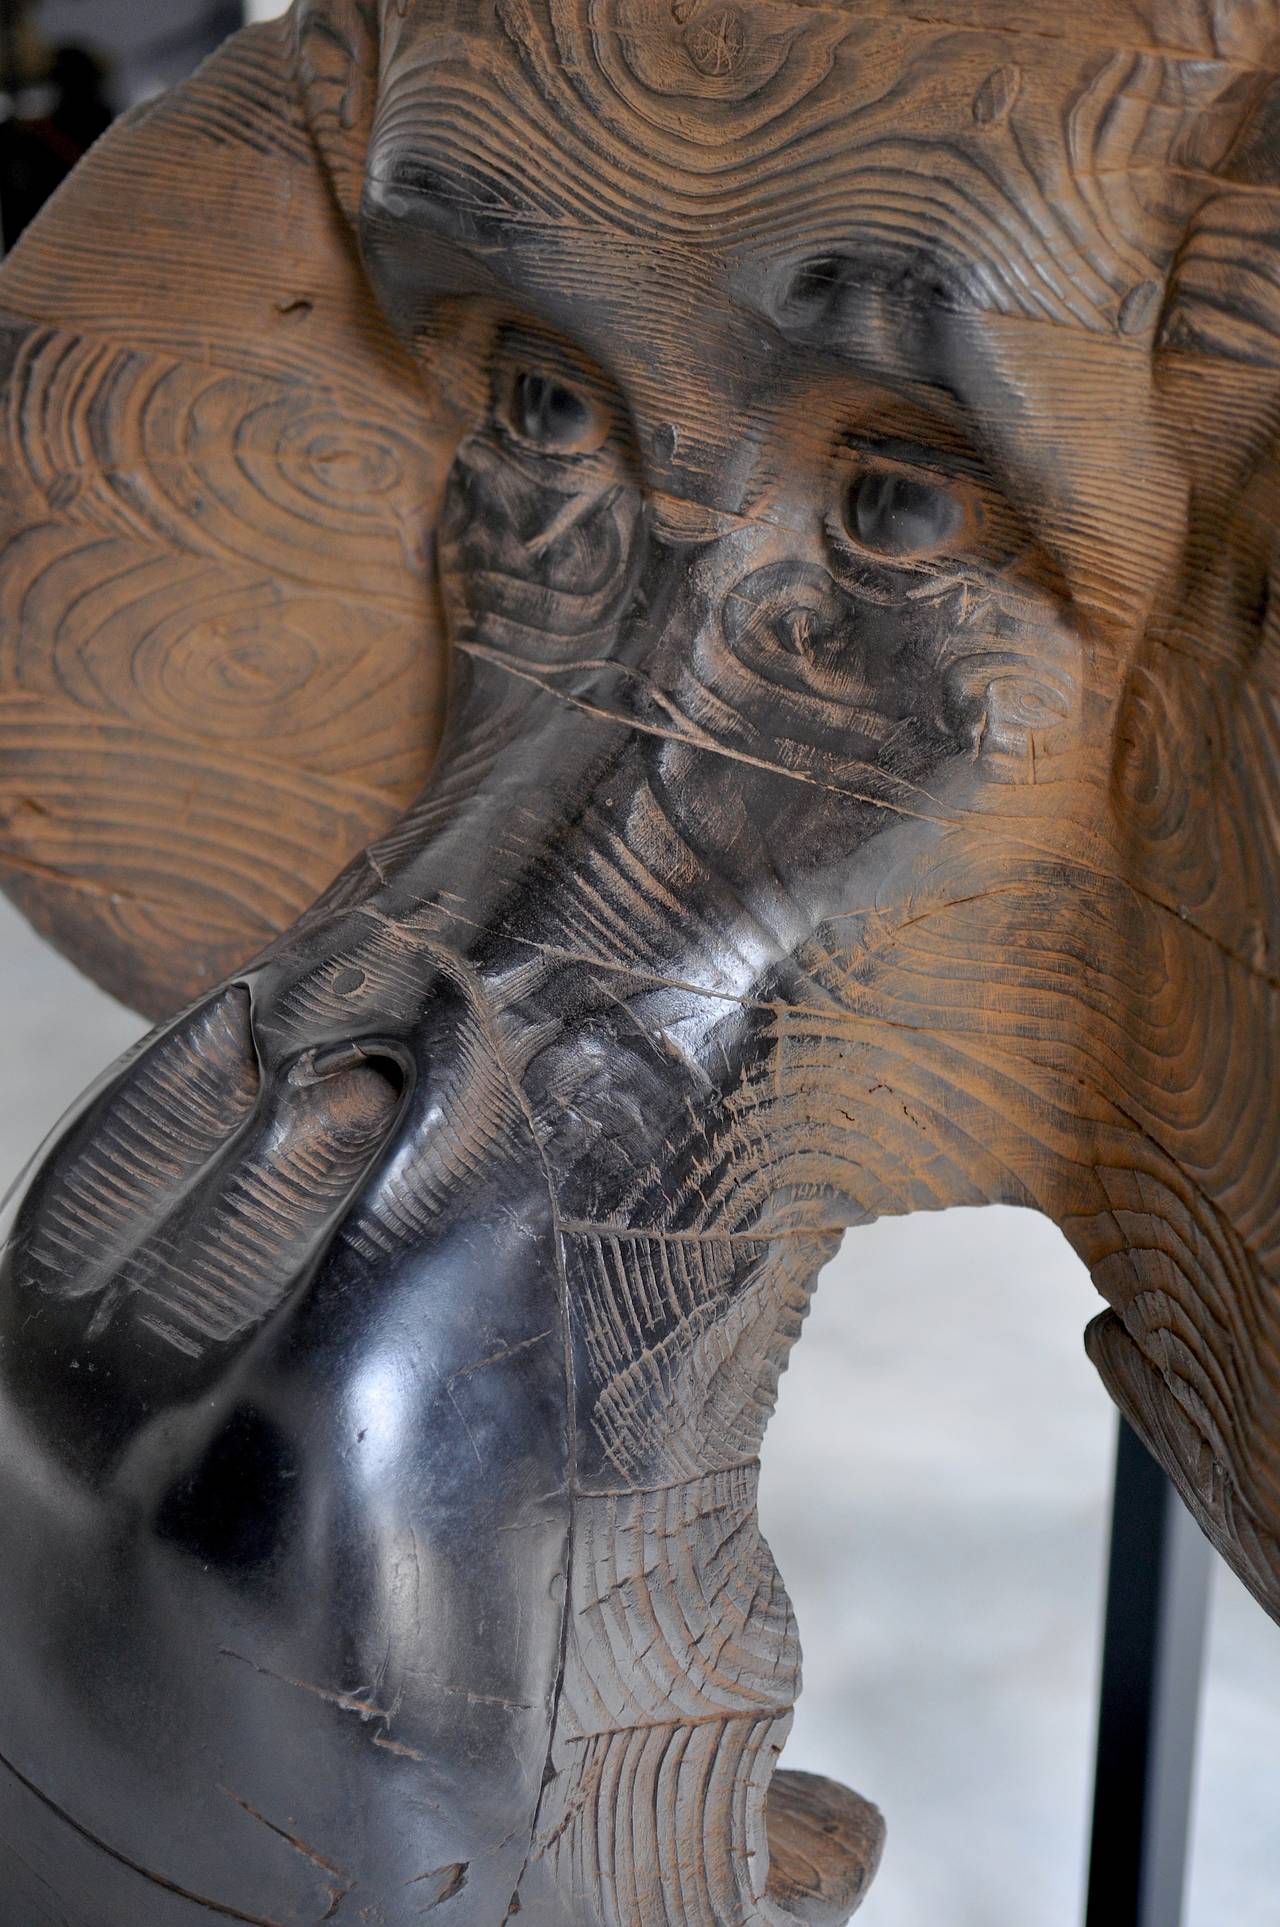 Orang outang mask II - Contemporary Sculpture by Quentin Garel